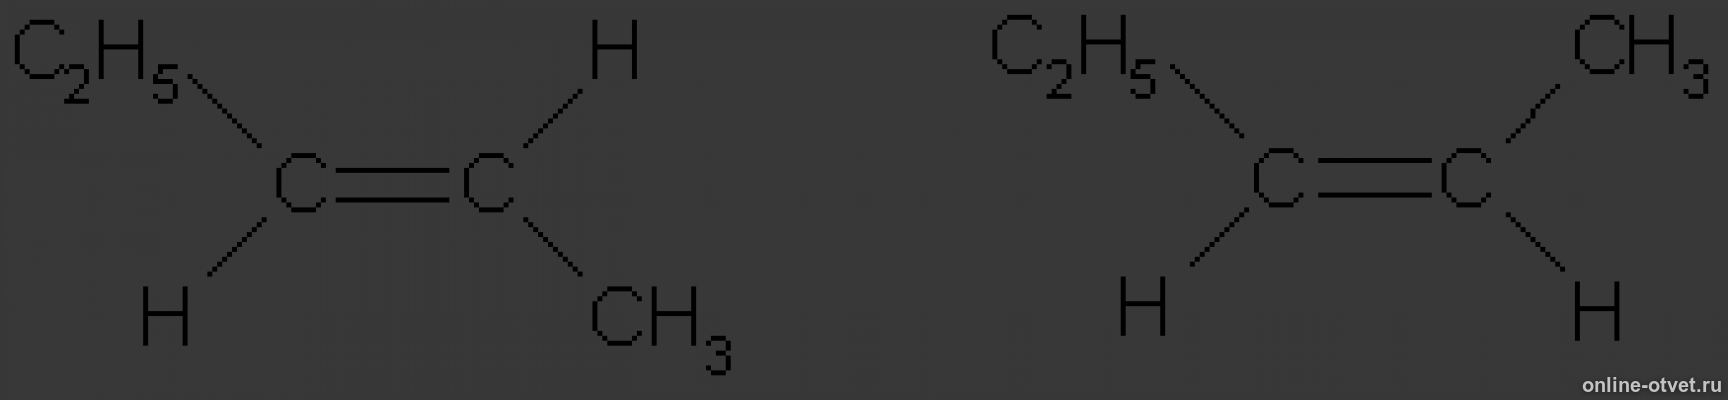 Цис пентен 2. Цис пентен 2 формула. Транс пентен 2 структурная формула. 3 3 Диметил бутен 1 цис и транс изомерия. Изомерия гексен 2